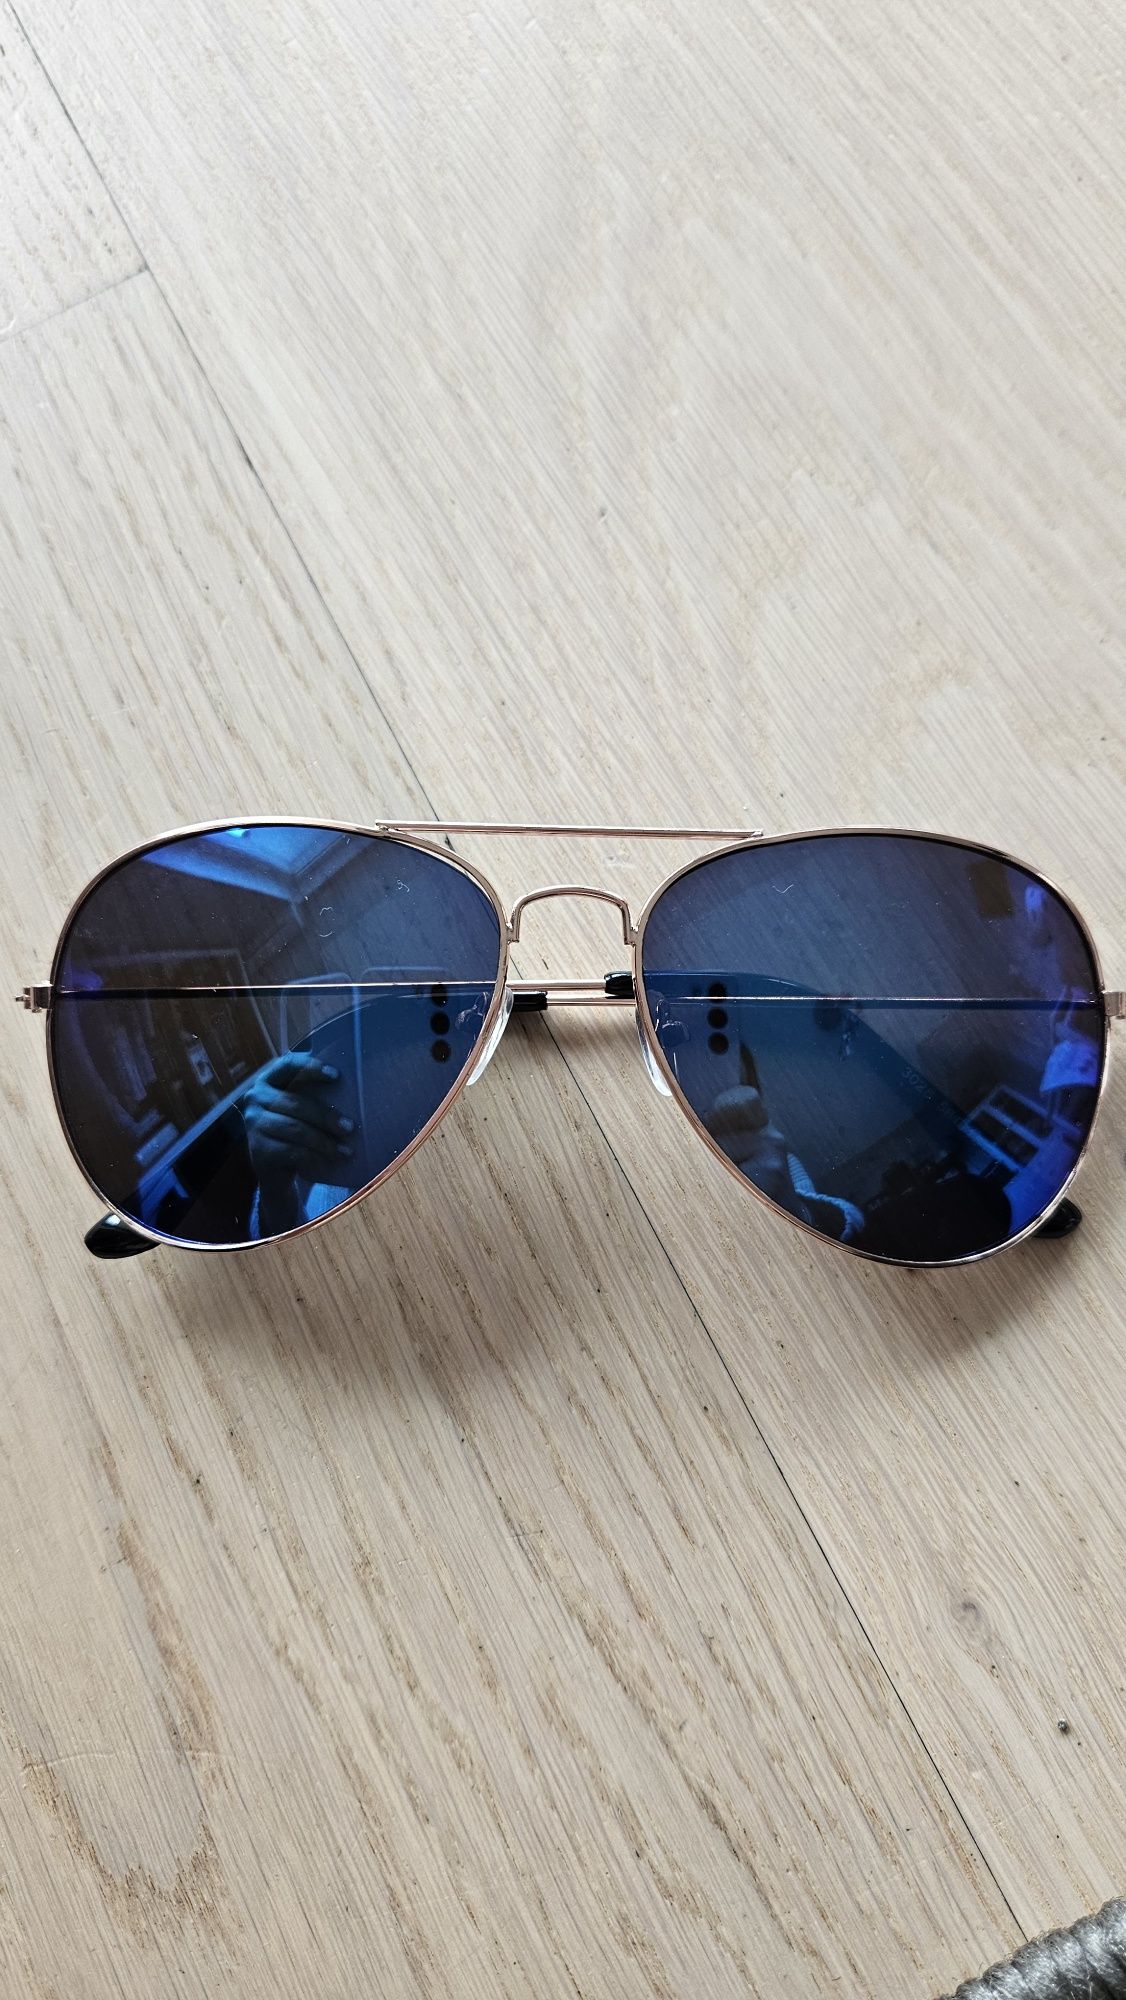 Nowe okulary przeciwsłoneczne typu aviatorki